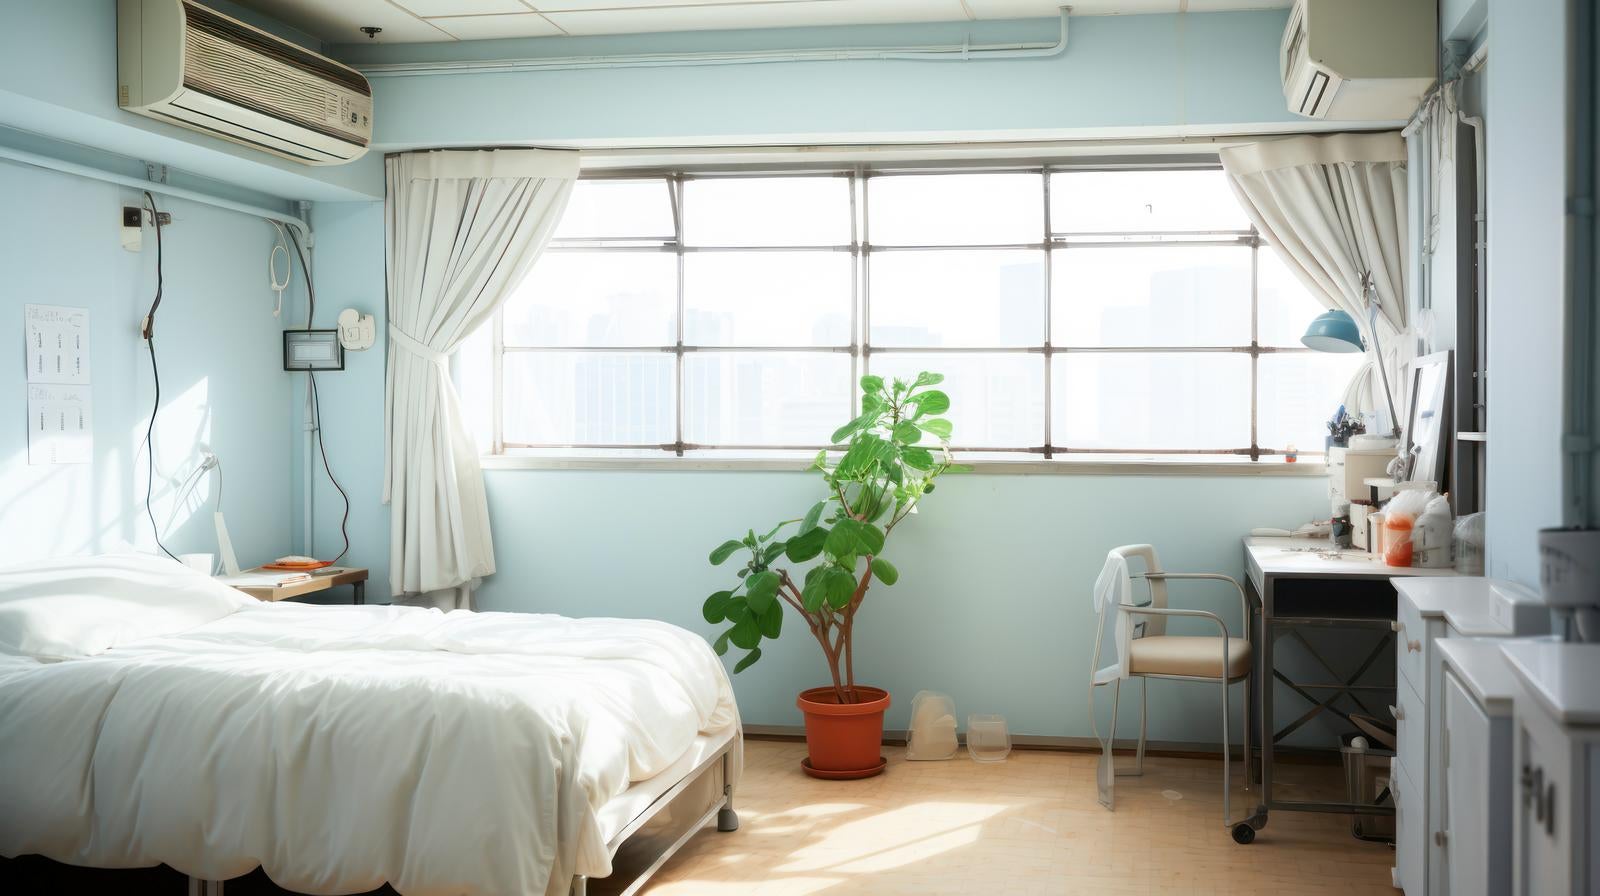 「病室のベッドと観葉植物」の写真